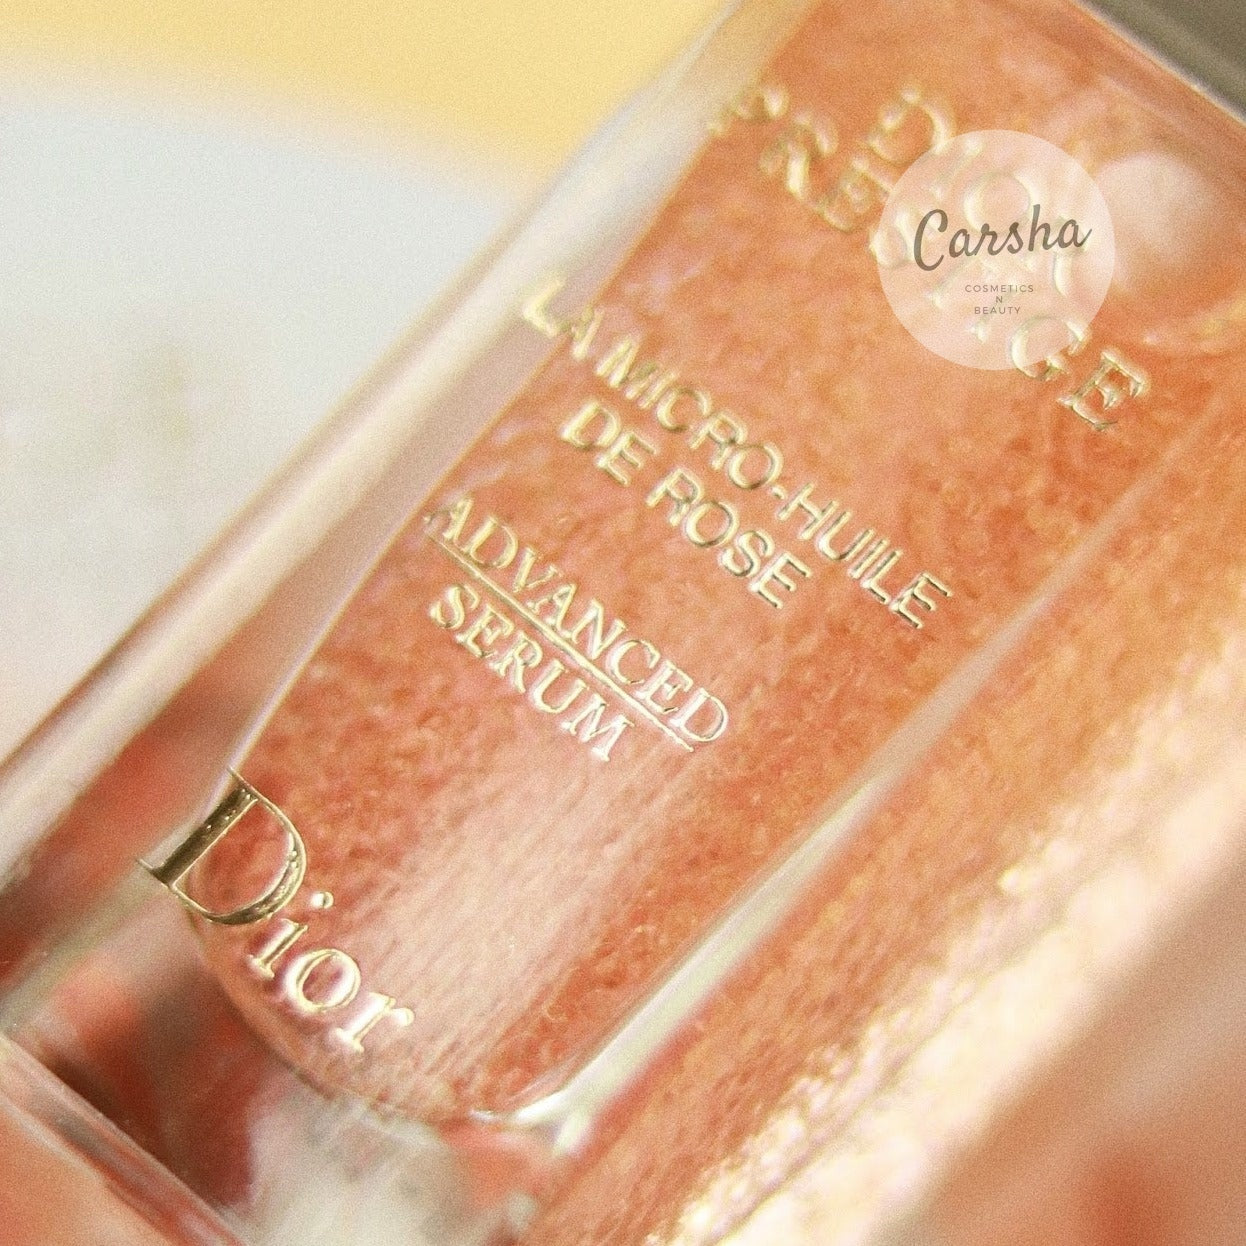 Dior Prestige La Micro-Huile de Rose Advanced Serum 30ml | Carsha